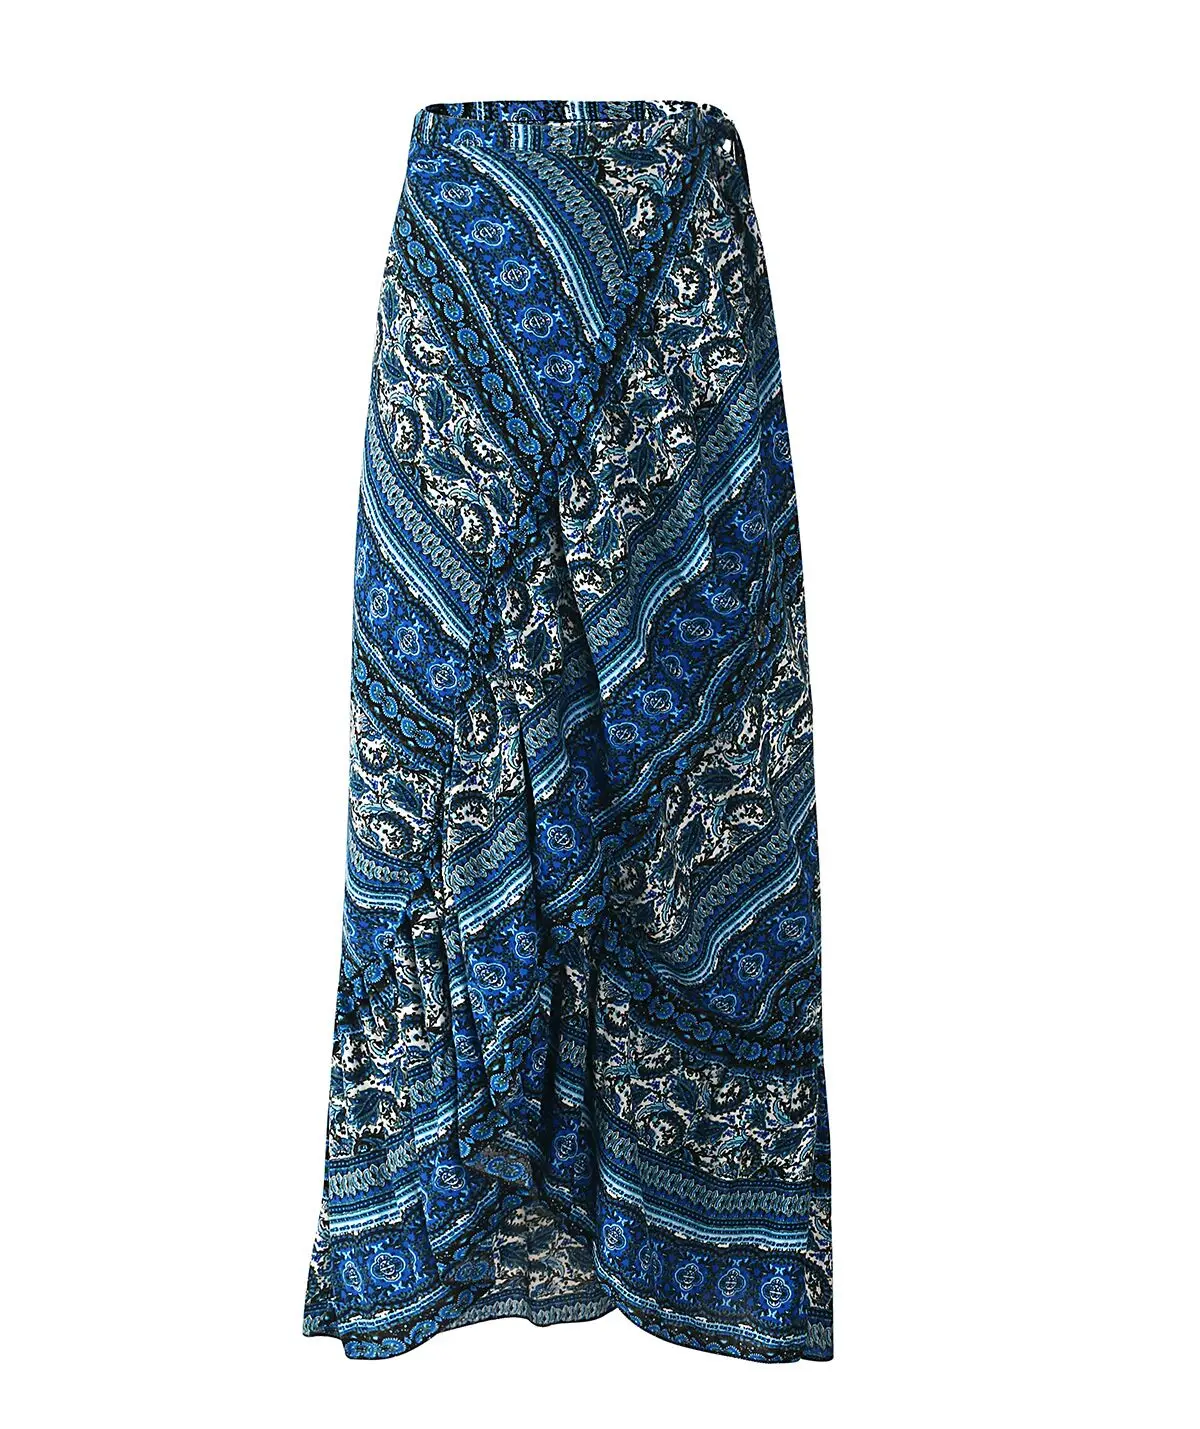 Lugentolo длинная юбка женская летняя богемная Новая мода с принтом раздельный морской пляж праздник свободная шнуровка 3 цветные юбки